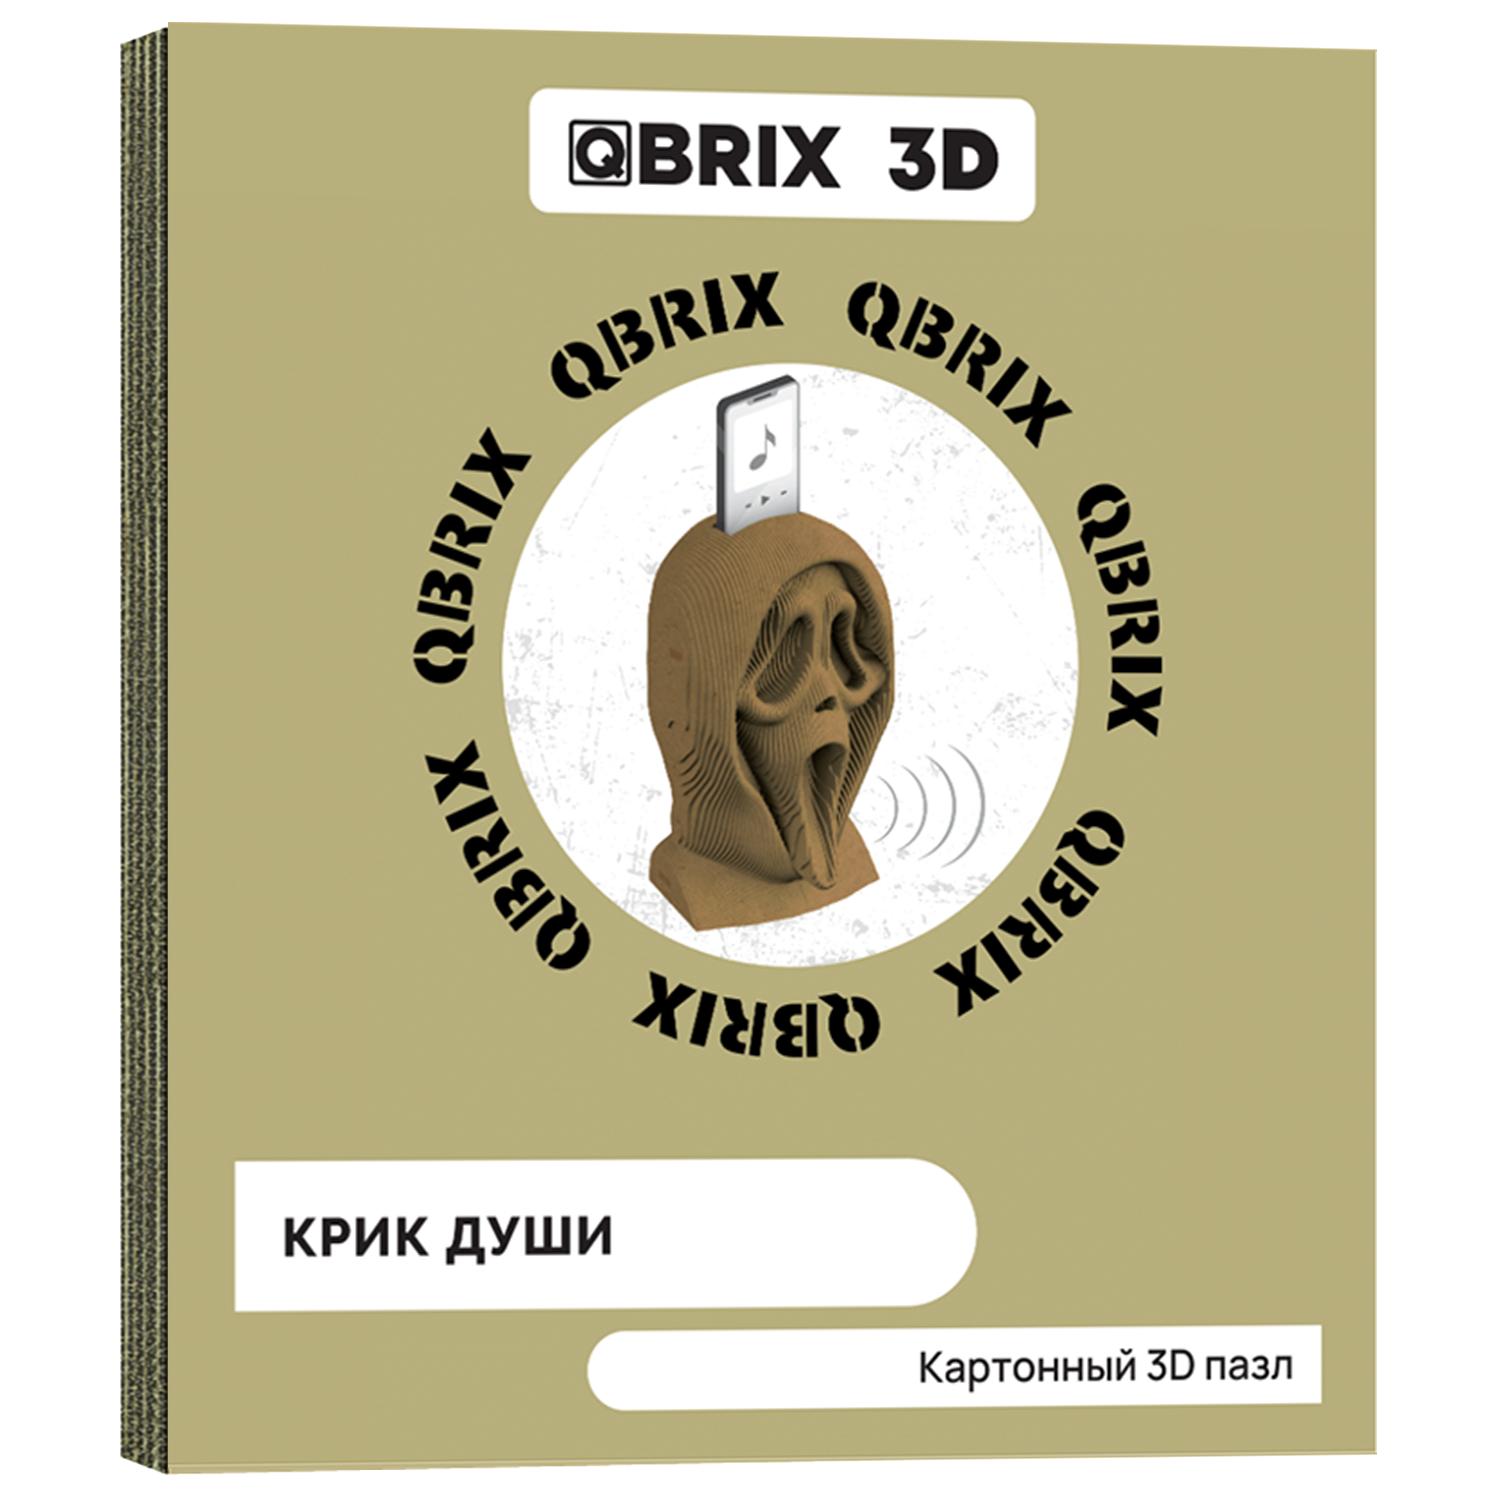 Конструктор QBRIX 3D картонный Крик души 20009 20009 - фото 1